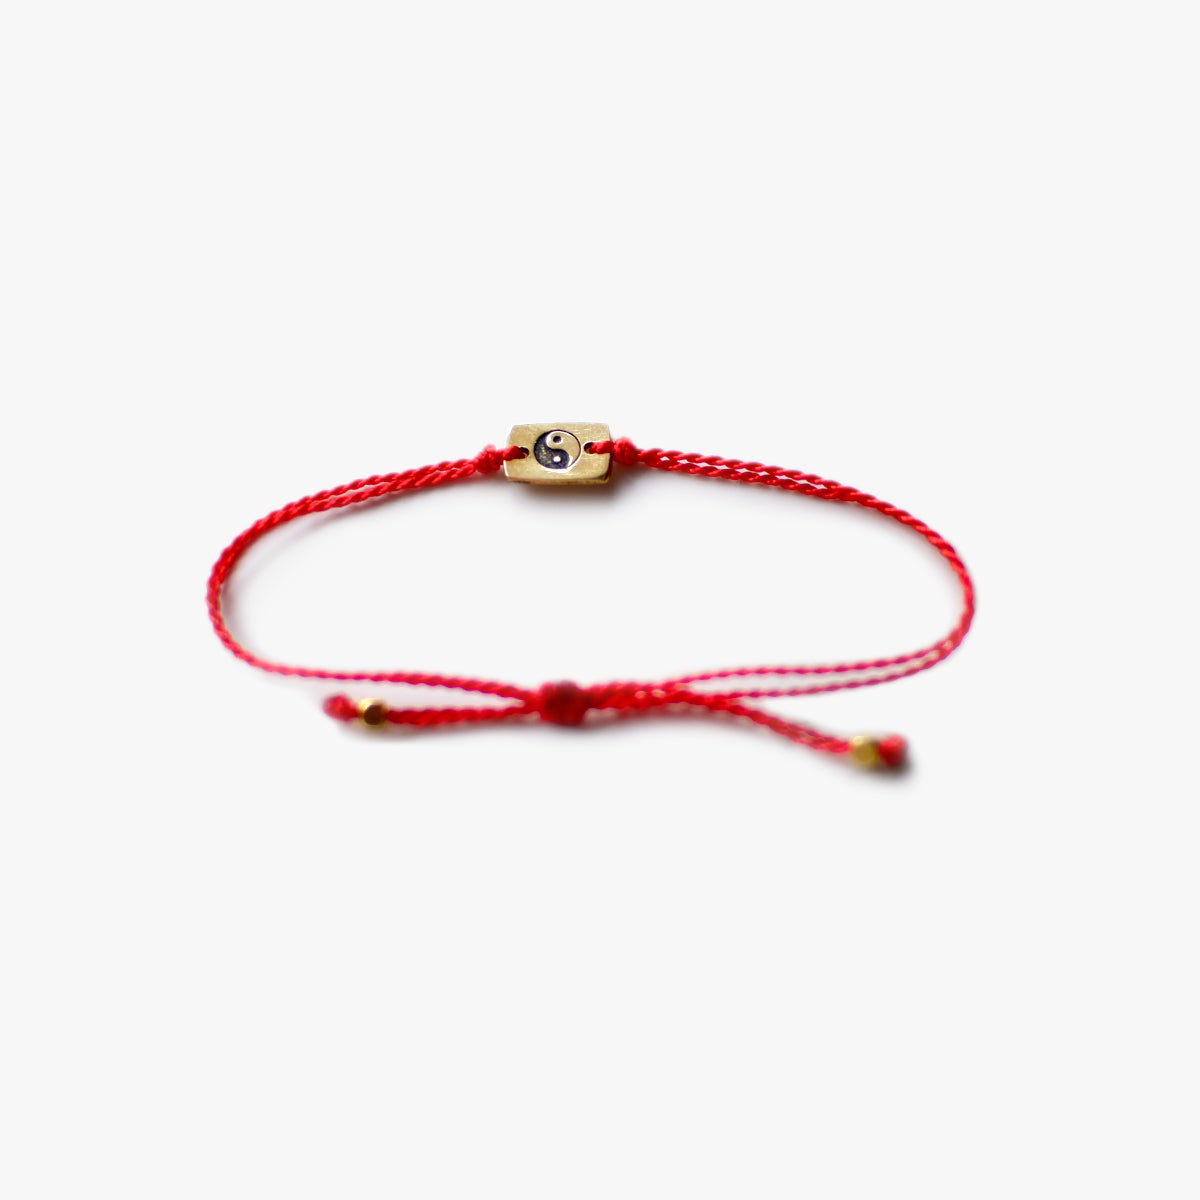 The Red Line Yin Yang Easy-Wear Bracelet